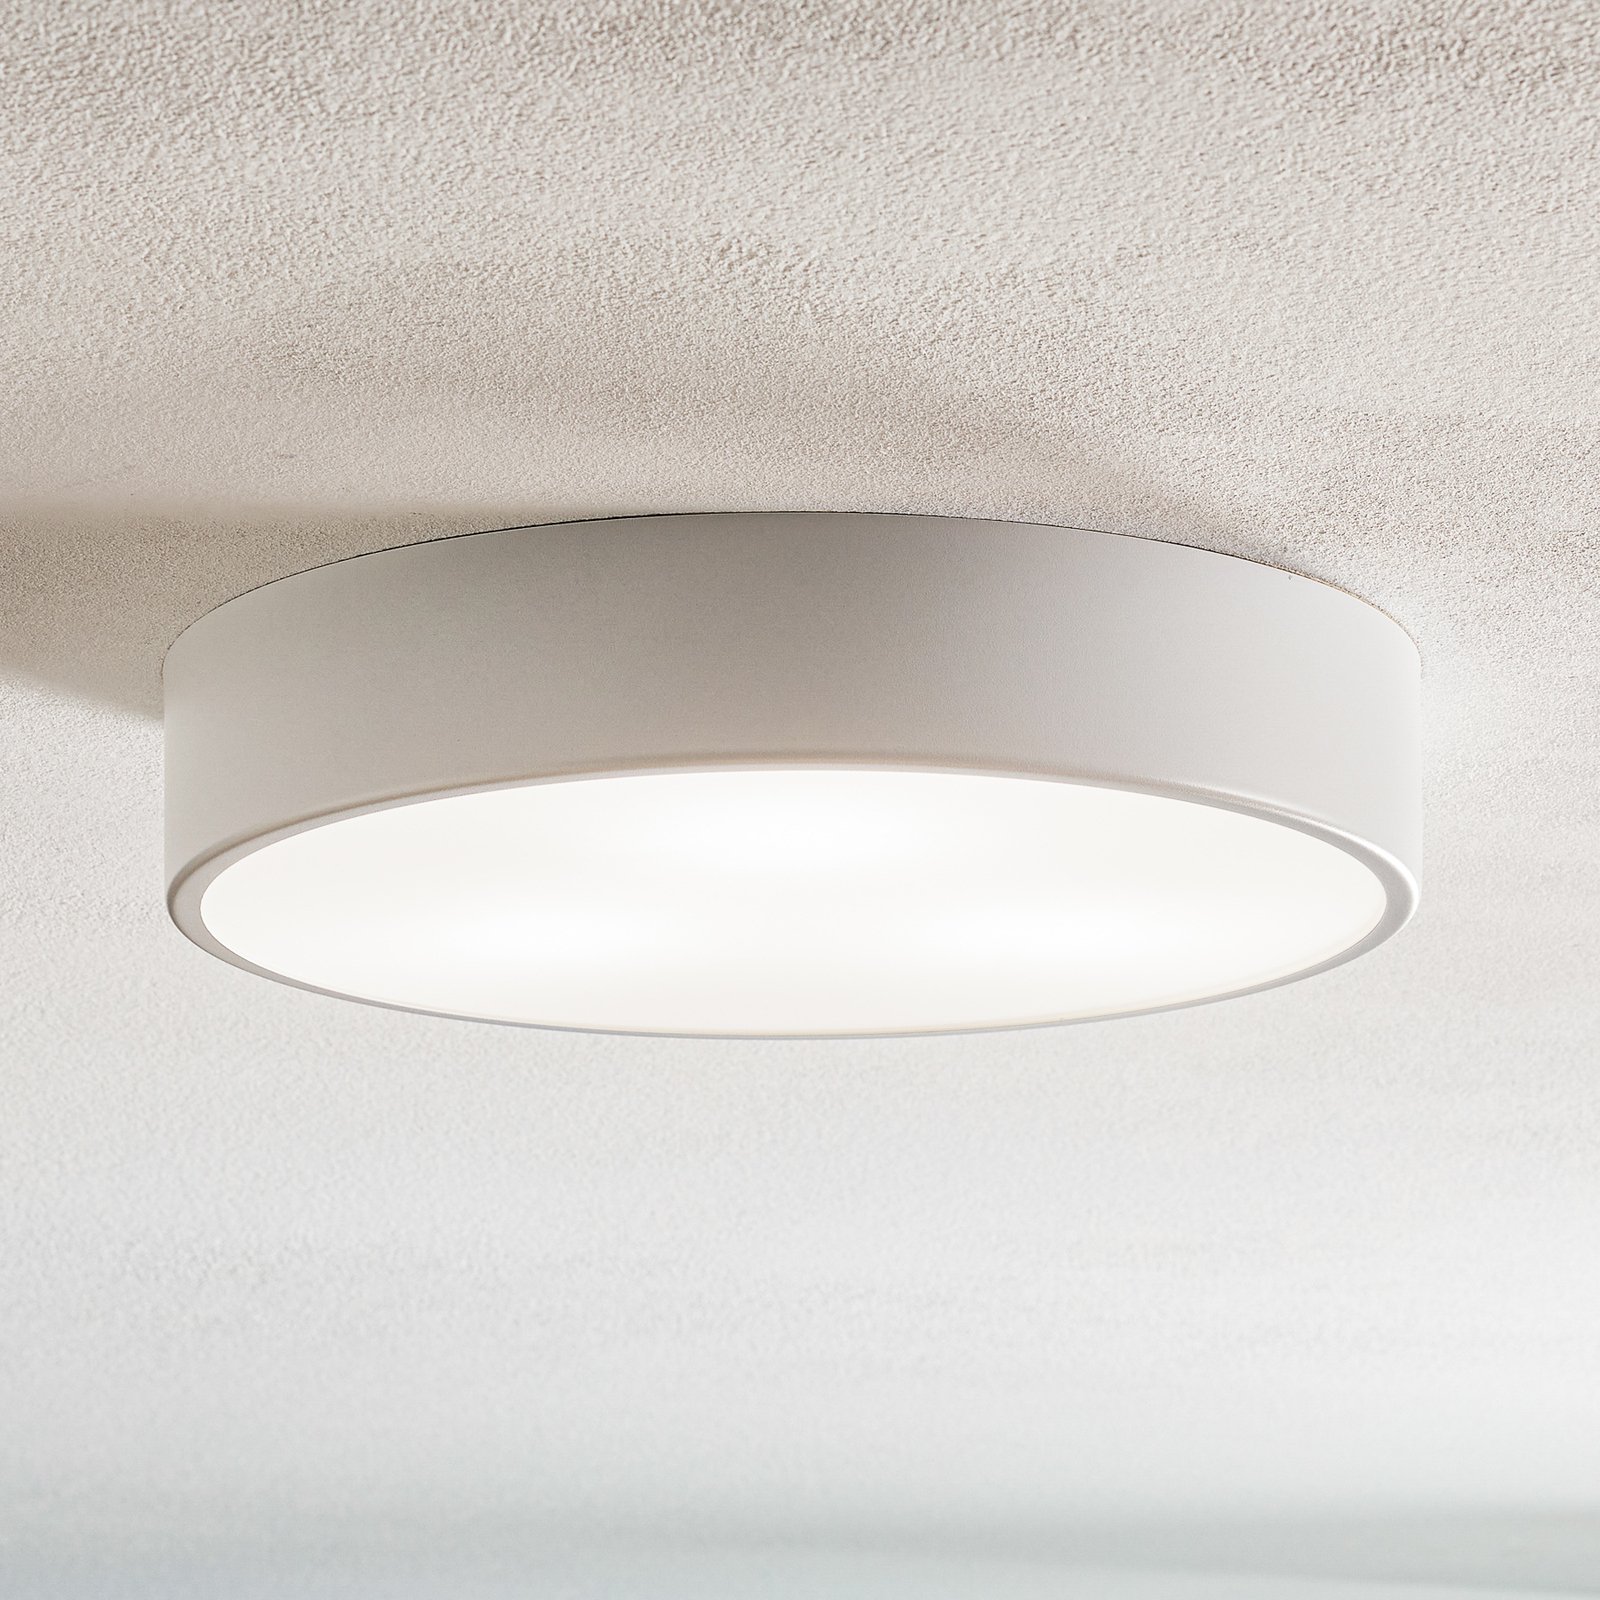 Cleo 400 ceiling light, sensor, Ø 40 cm white